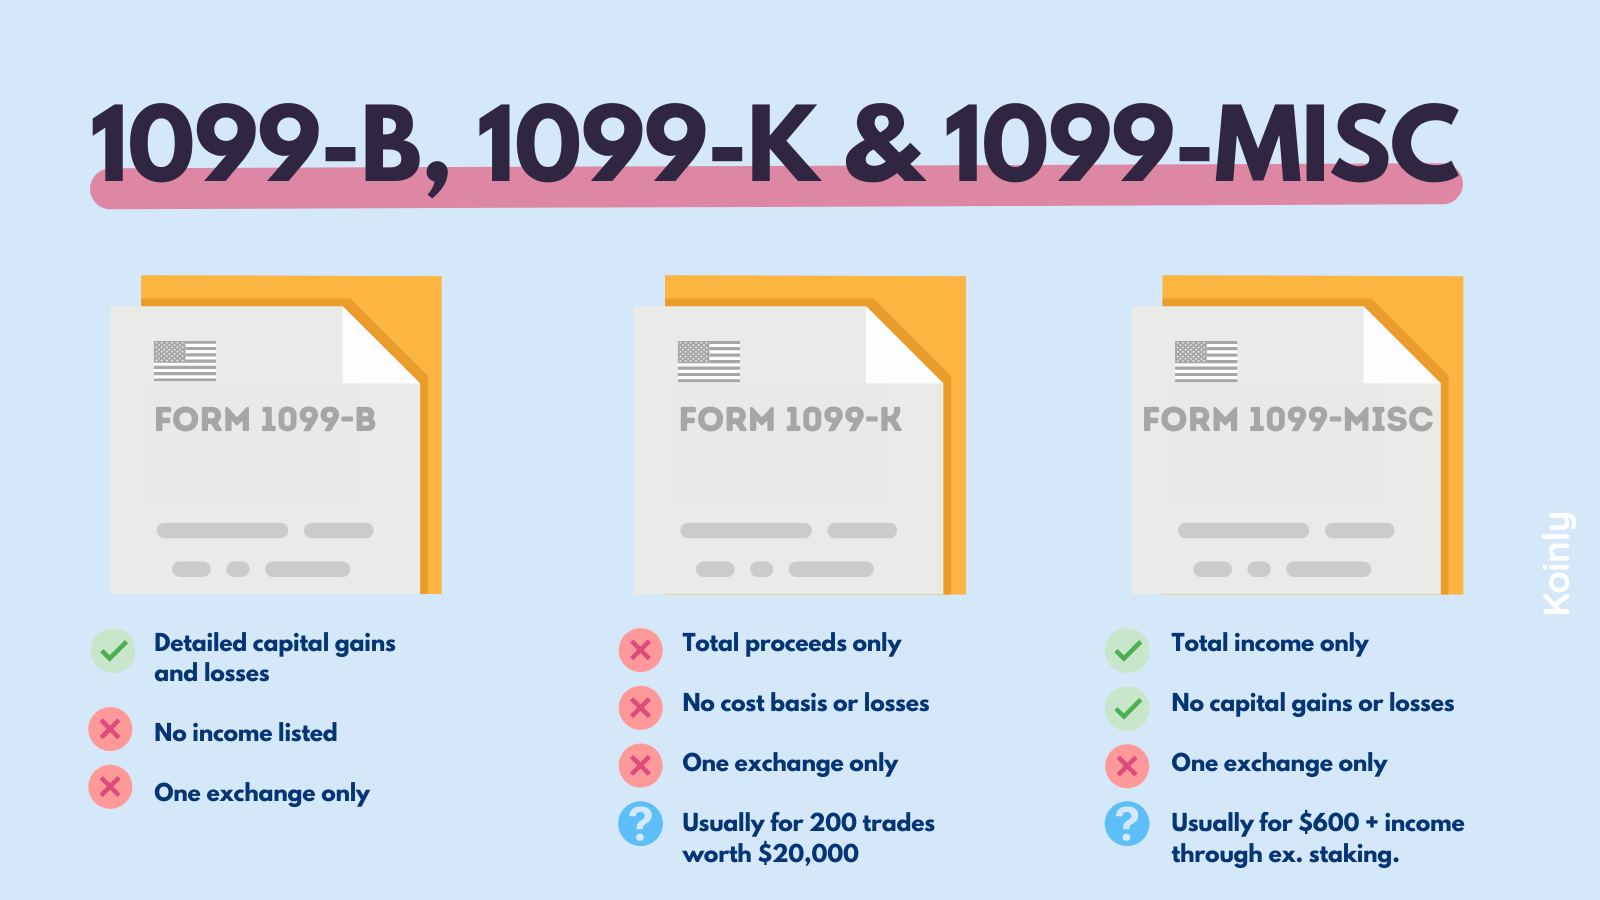 1099-B vs. 1099-K vs. 1099-MISC